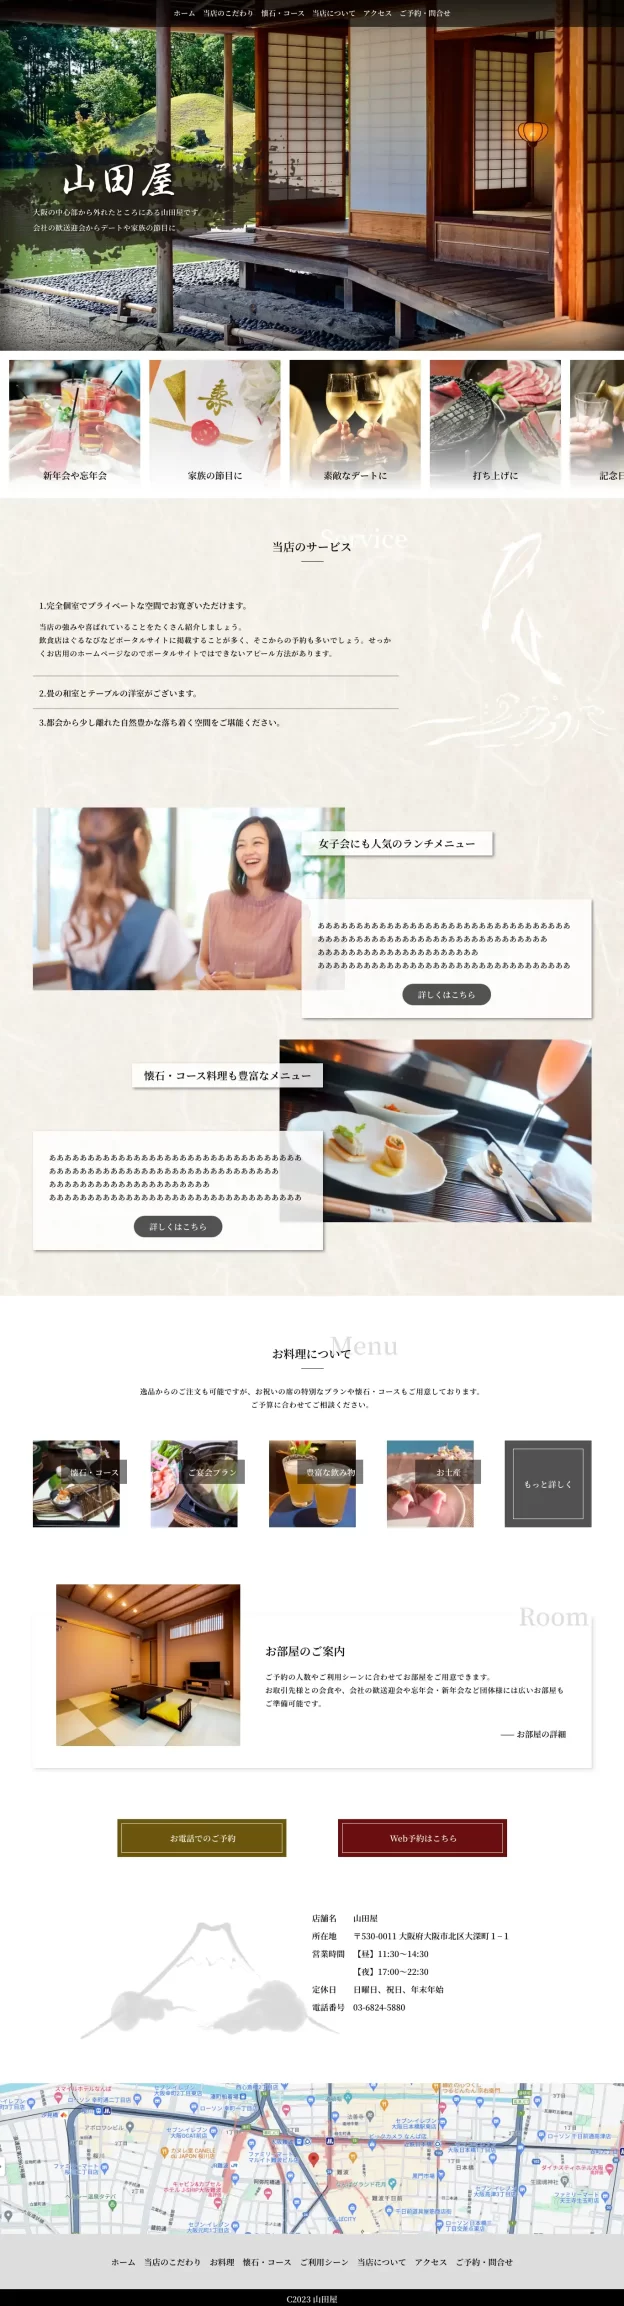 高級感のある和を意識した日本料理店のwebデザイン